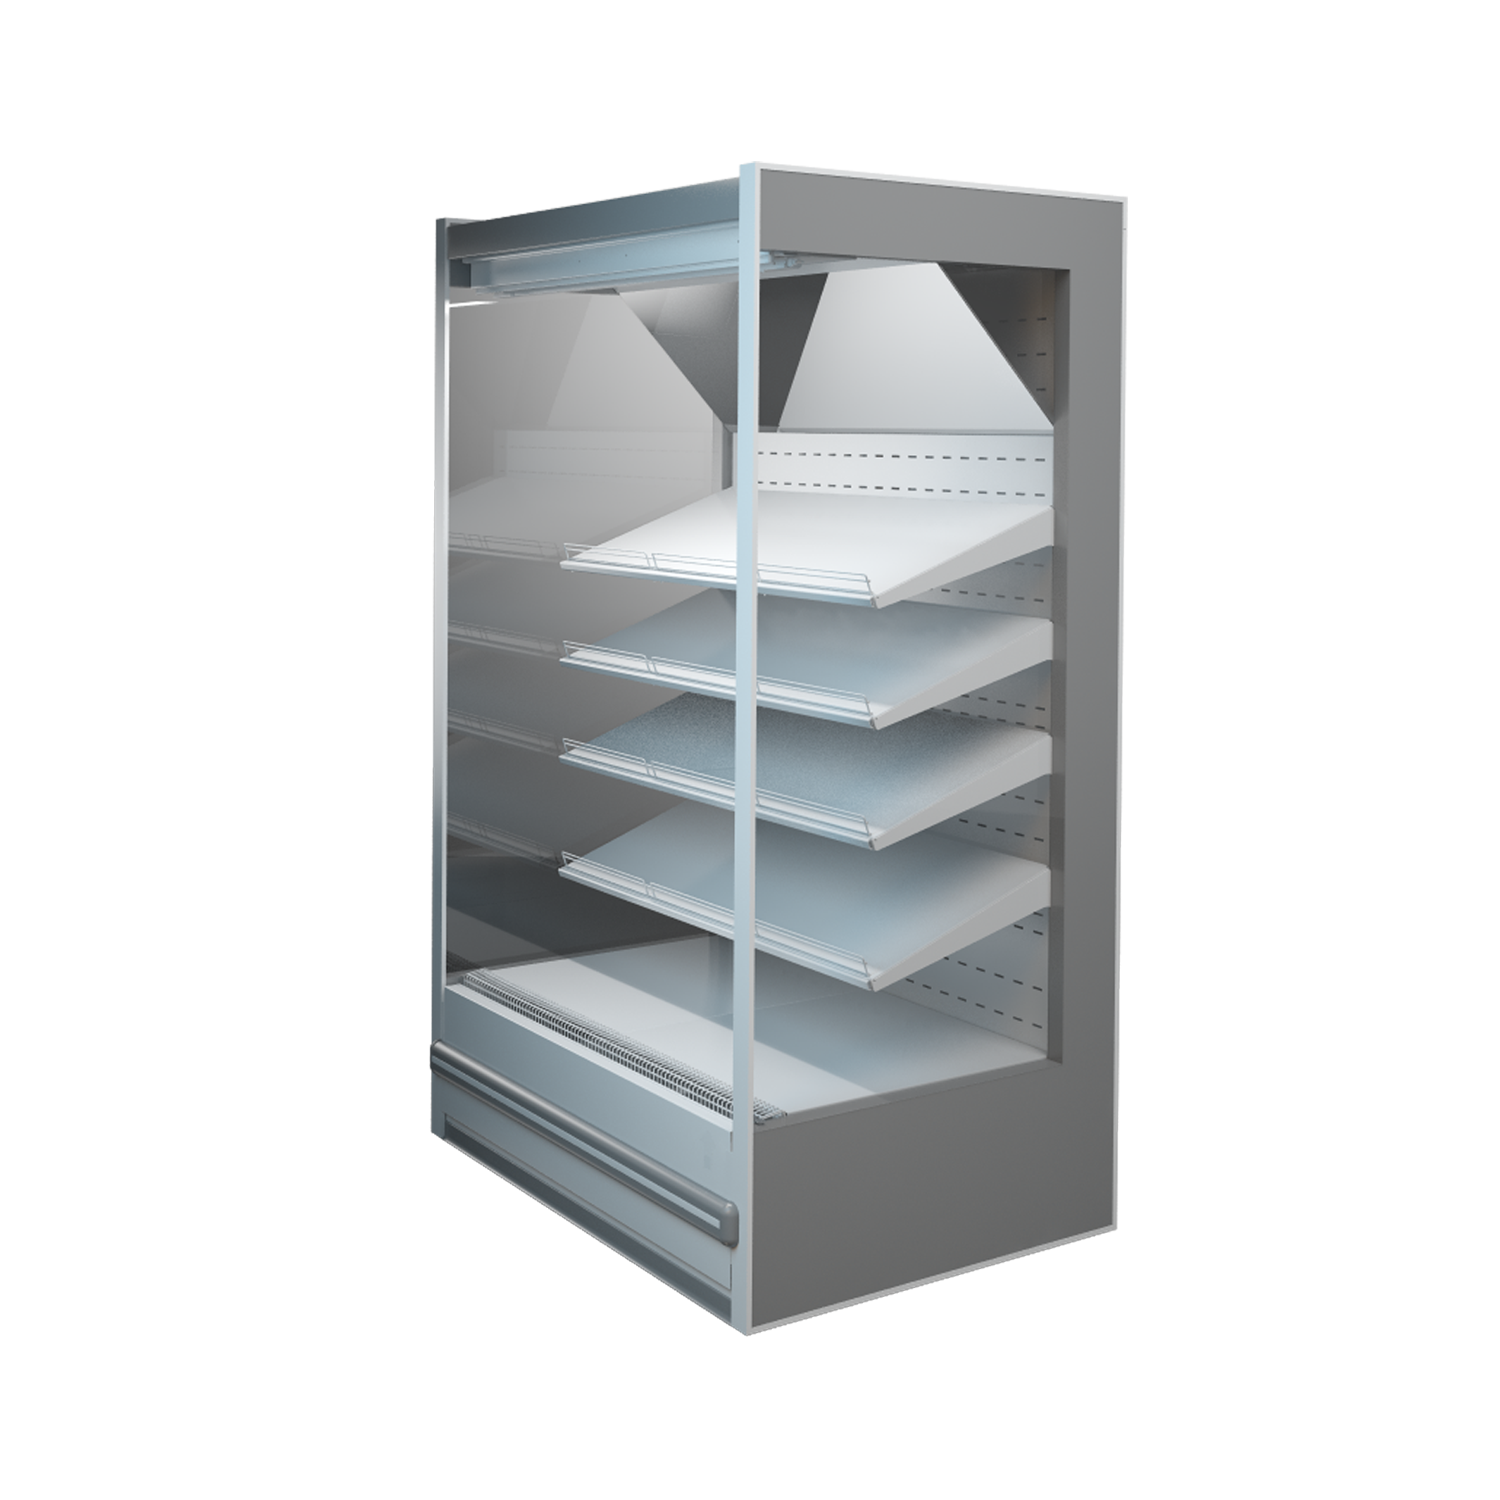 Units 120. Горка холодильная Hawk Unit 50h160. ITON холодильное оборудование. Пристенная витрина. Холодильная витрина пристенного типа в55. "Женева-1".